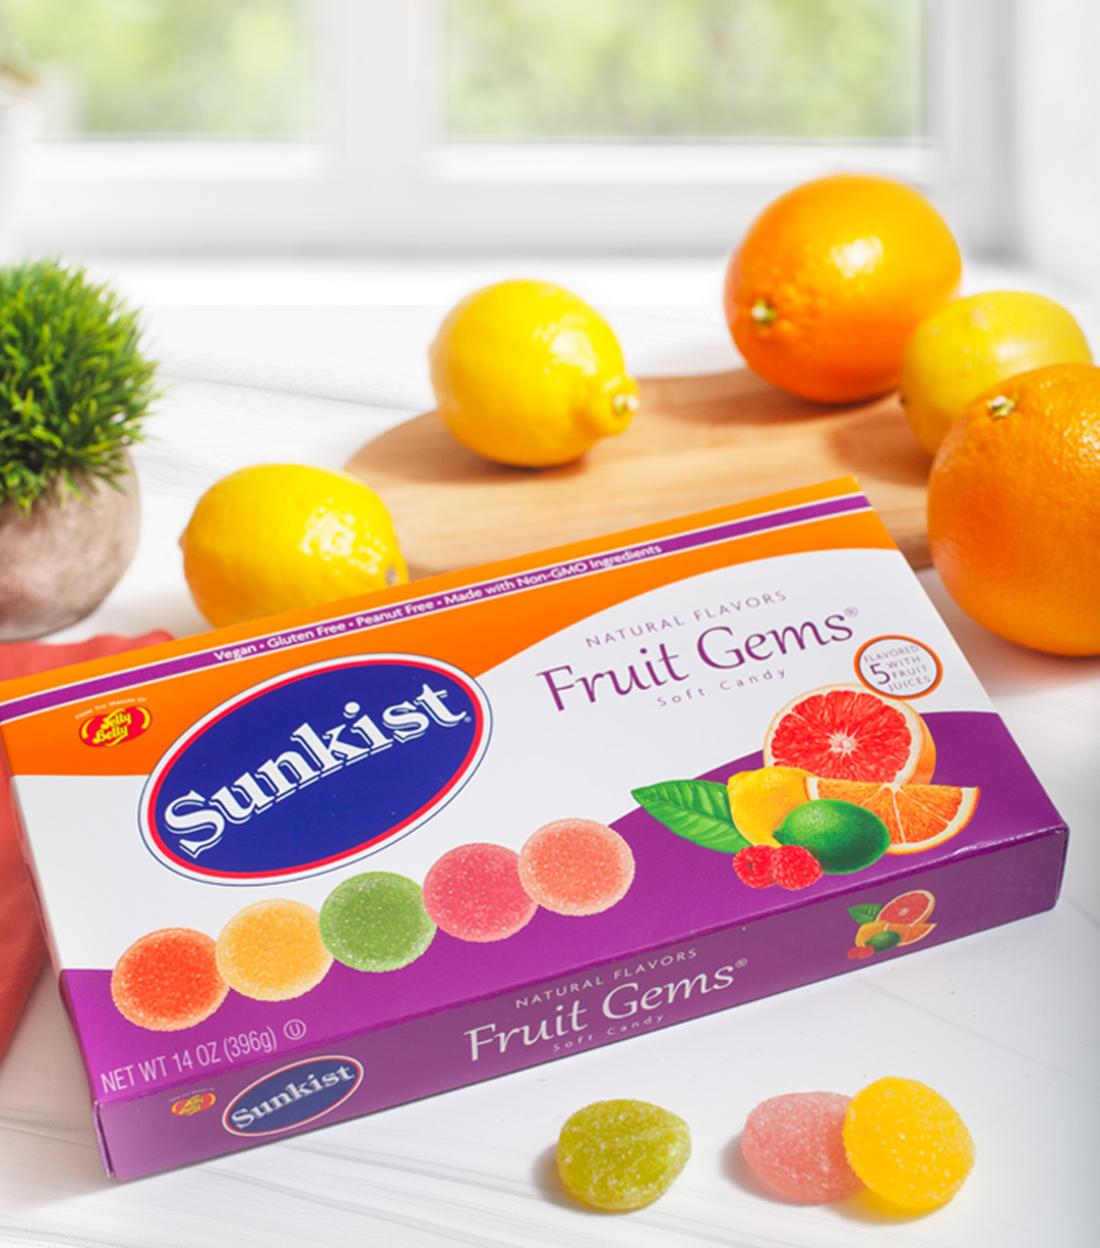 Sunkist Citrus Mix Jelly Beans & Fruit Gems